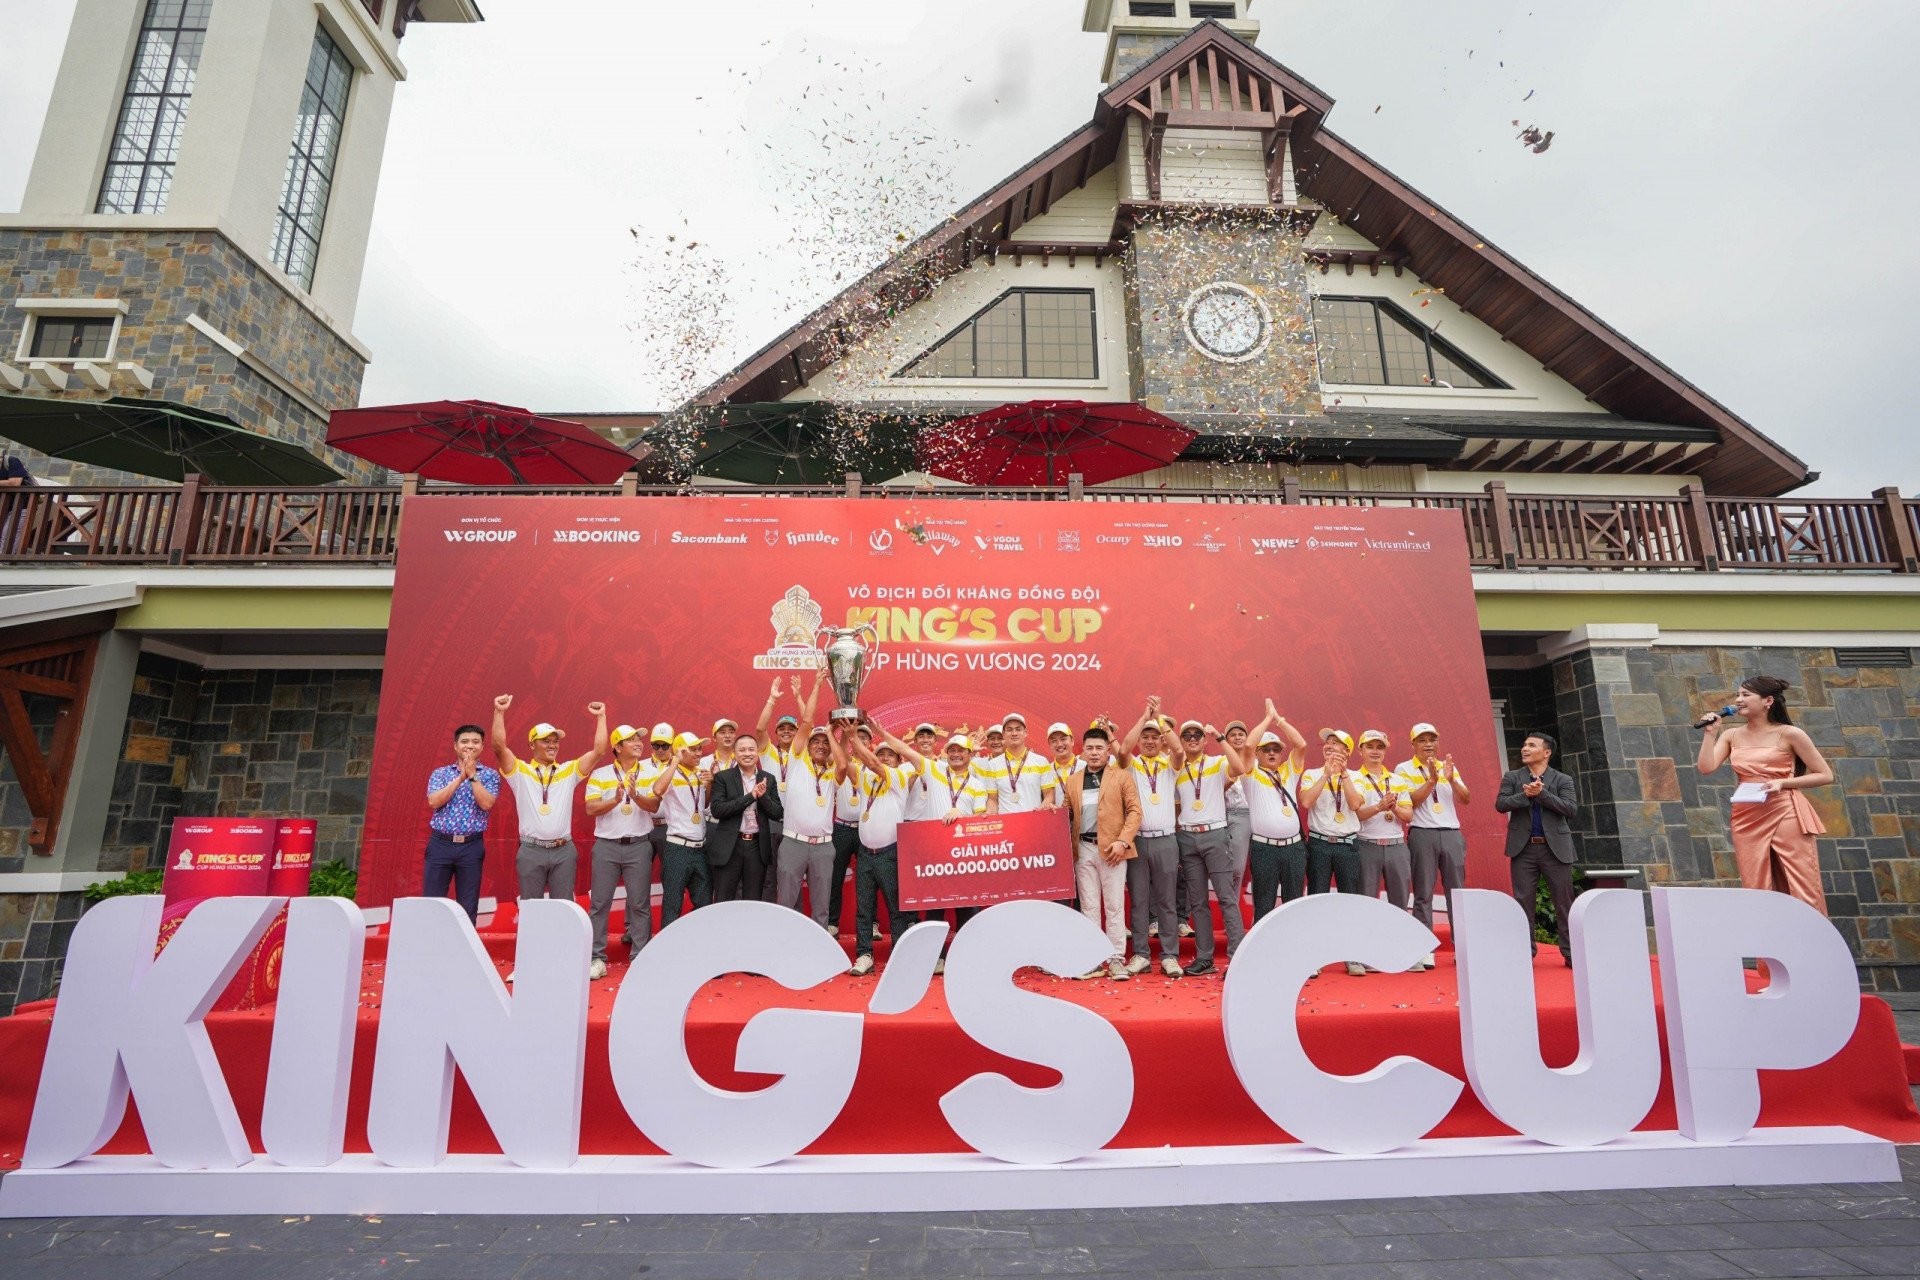 Đội tuyển miền Nam chính thức giành vô địch King’s Cup 2024 với tỷ số áp đảo